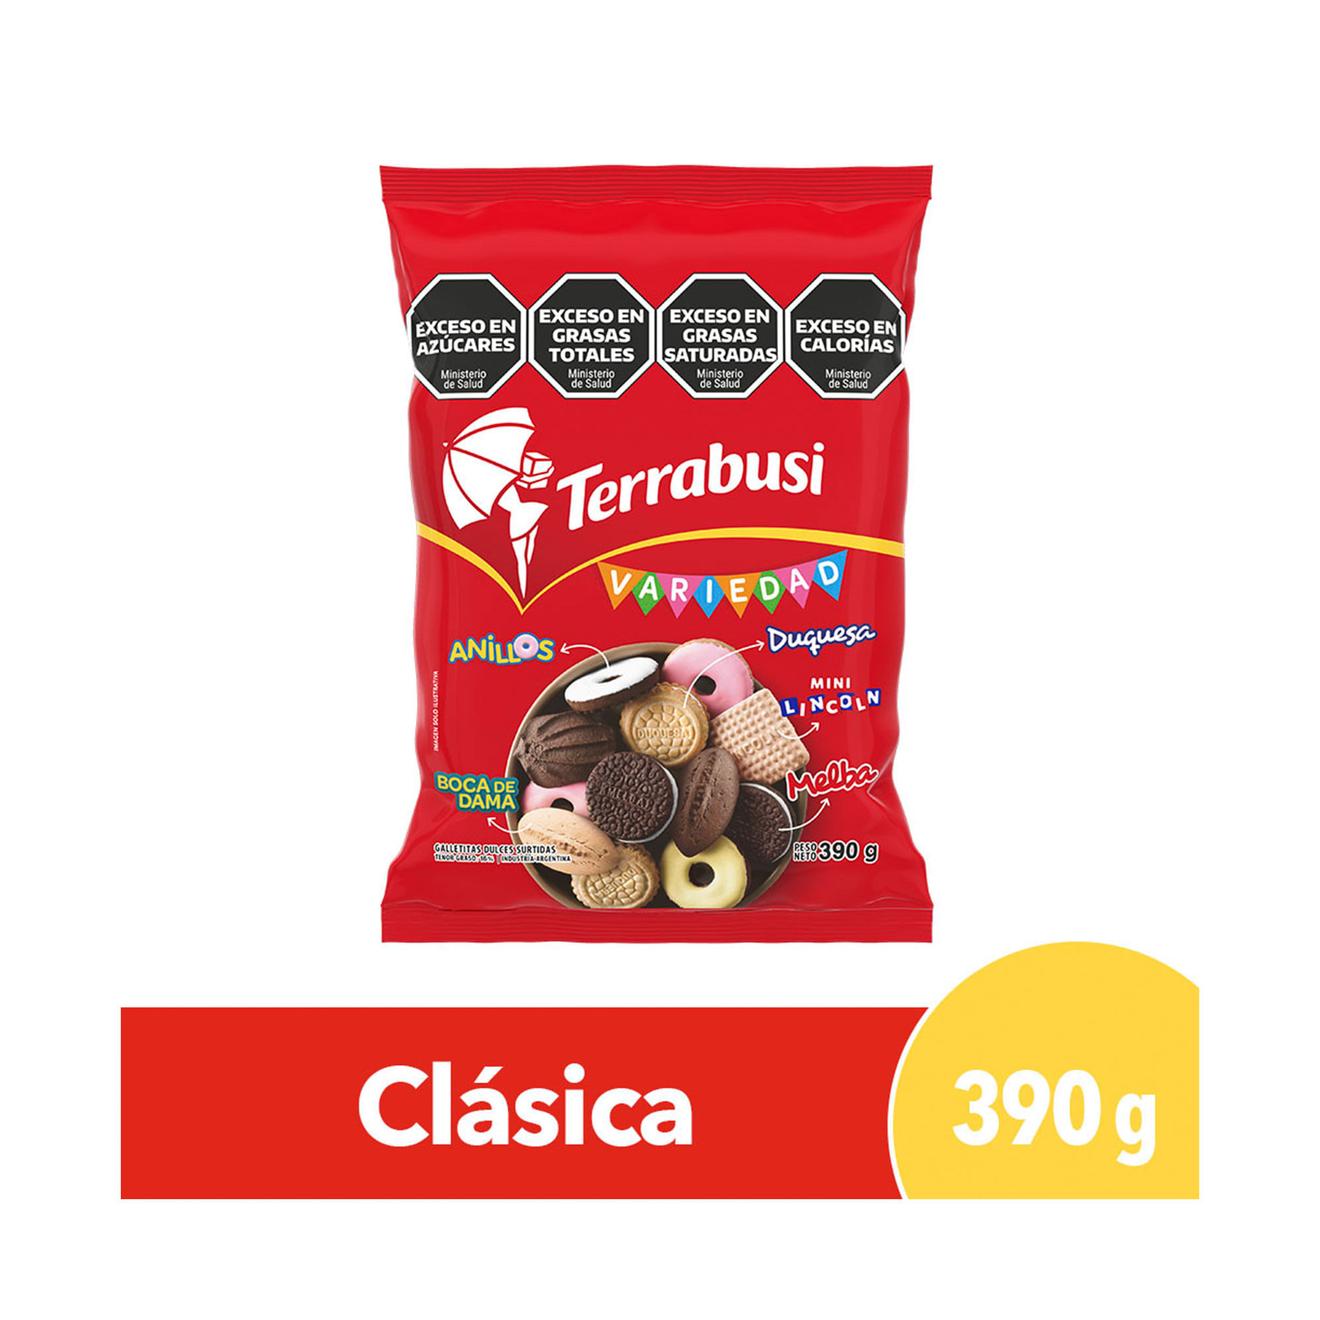 Oferta de Galletitas dulces Variedad de Terrabusi nuevo mix 390 g. por $1599 en Carrefour